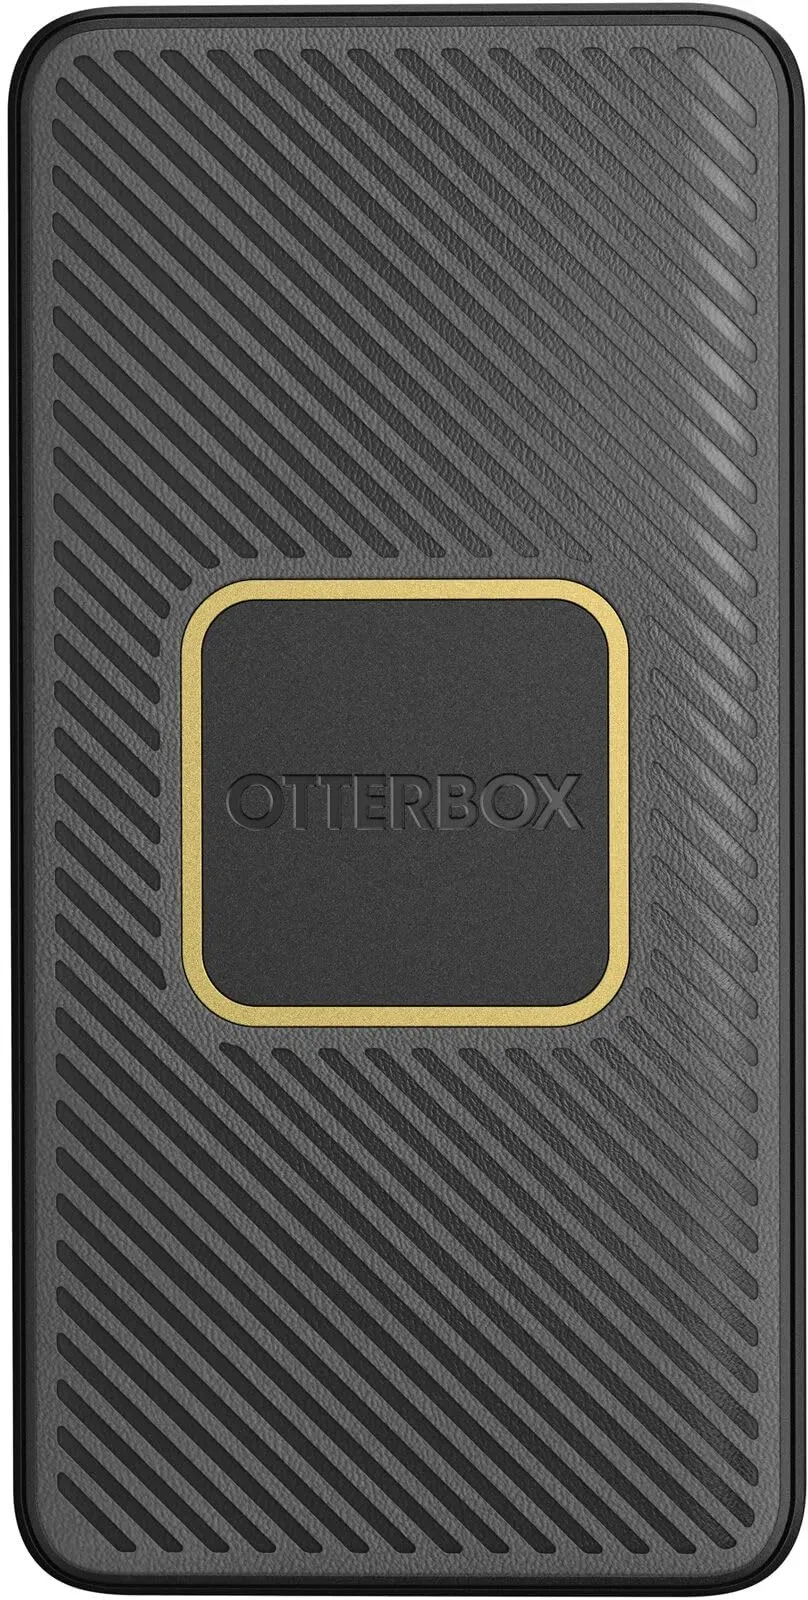 OtterBox Power Bank mit Qi 10W drahtlosem Laden, 15,000 mAh externer Akku mit USB-A 18W und USB-C 18W Ausgangsleistung, Status LED, schlankes, sturzgeschütztes robustes Design, Schwarz